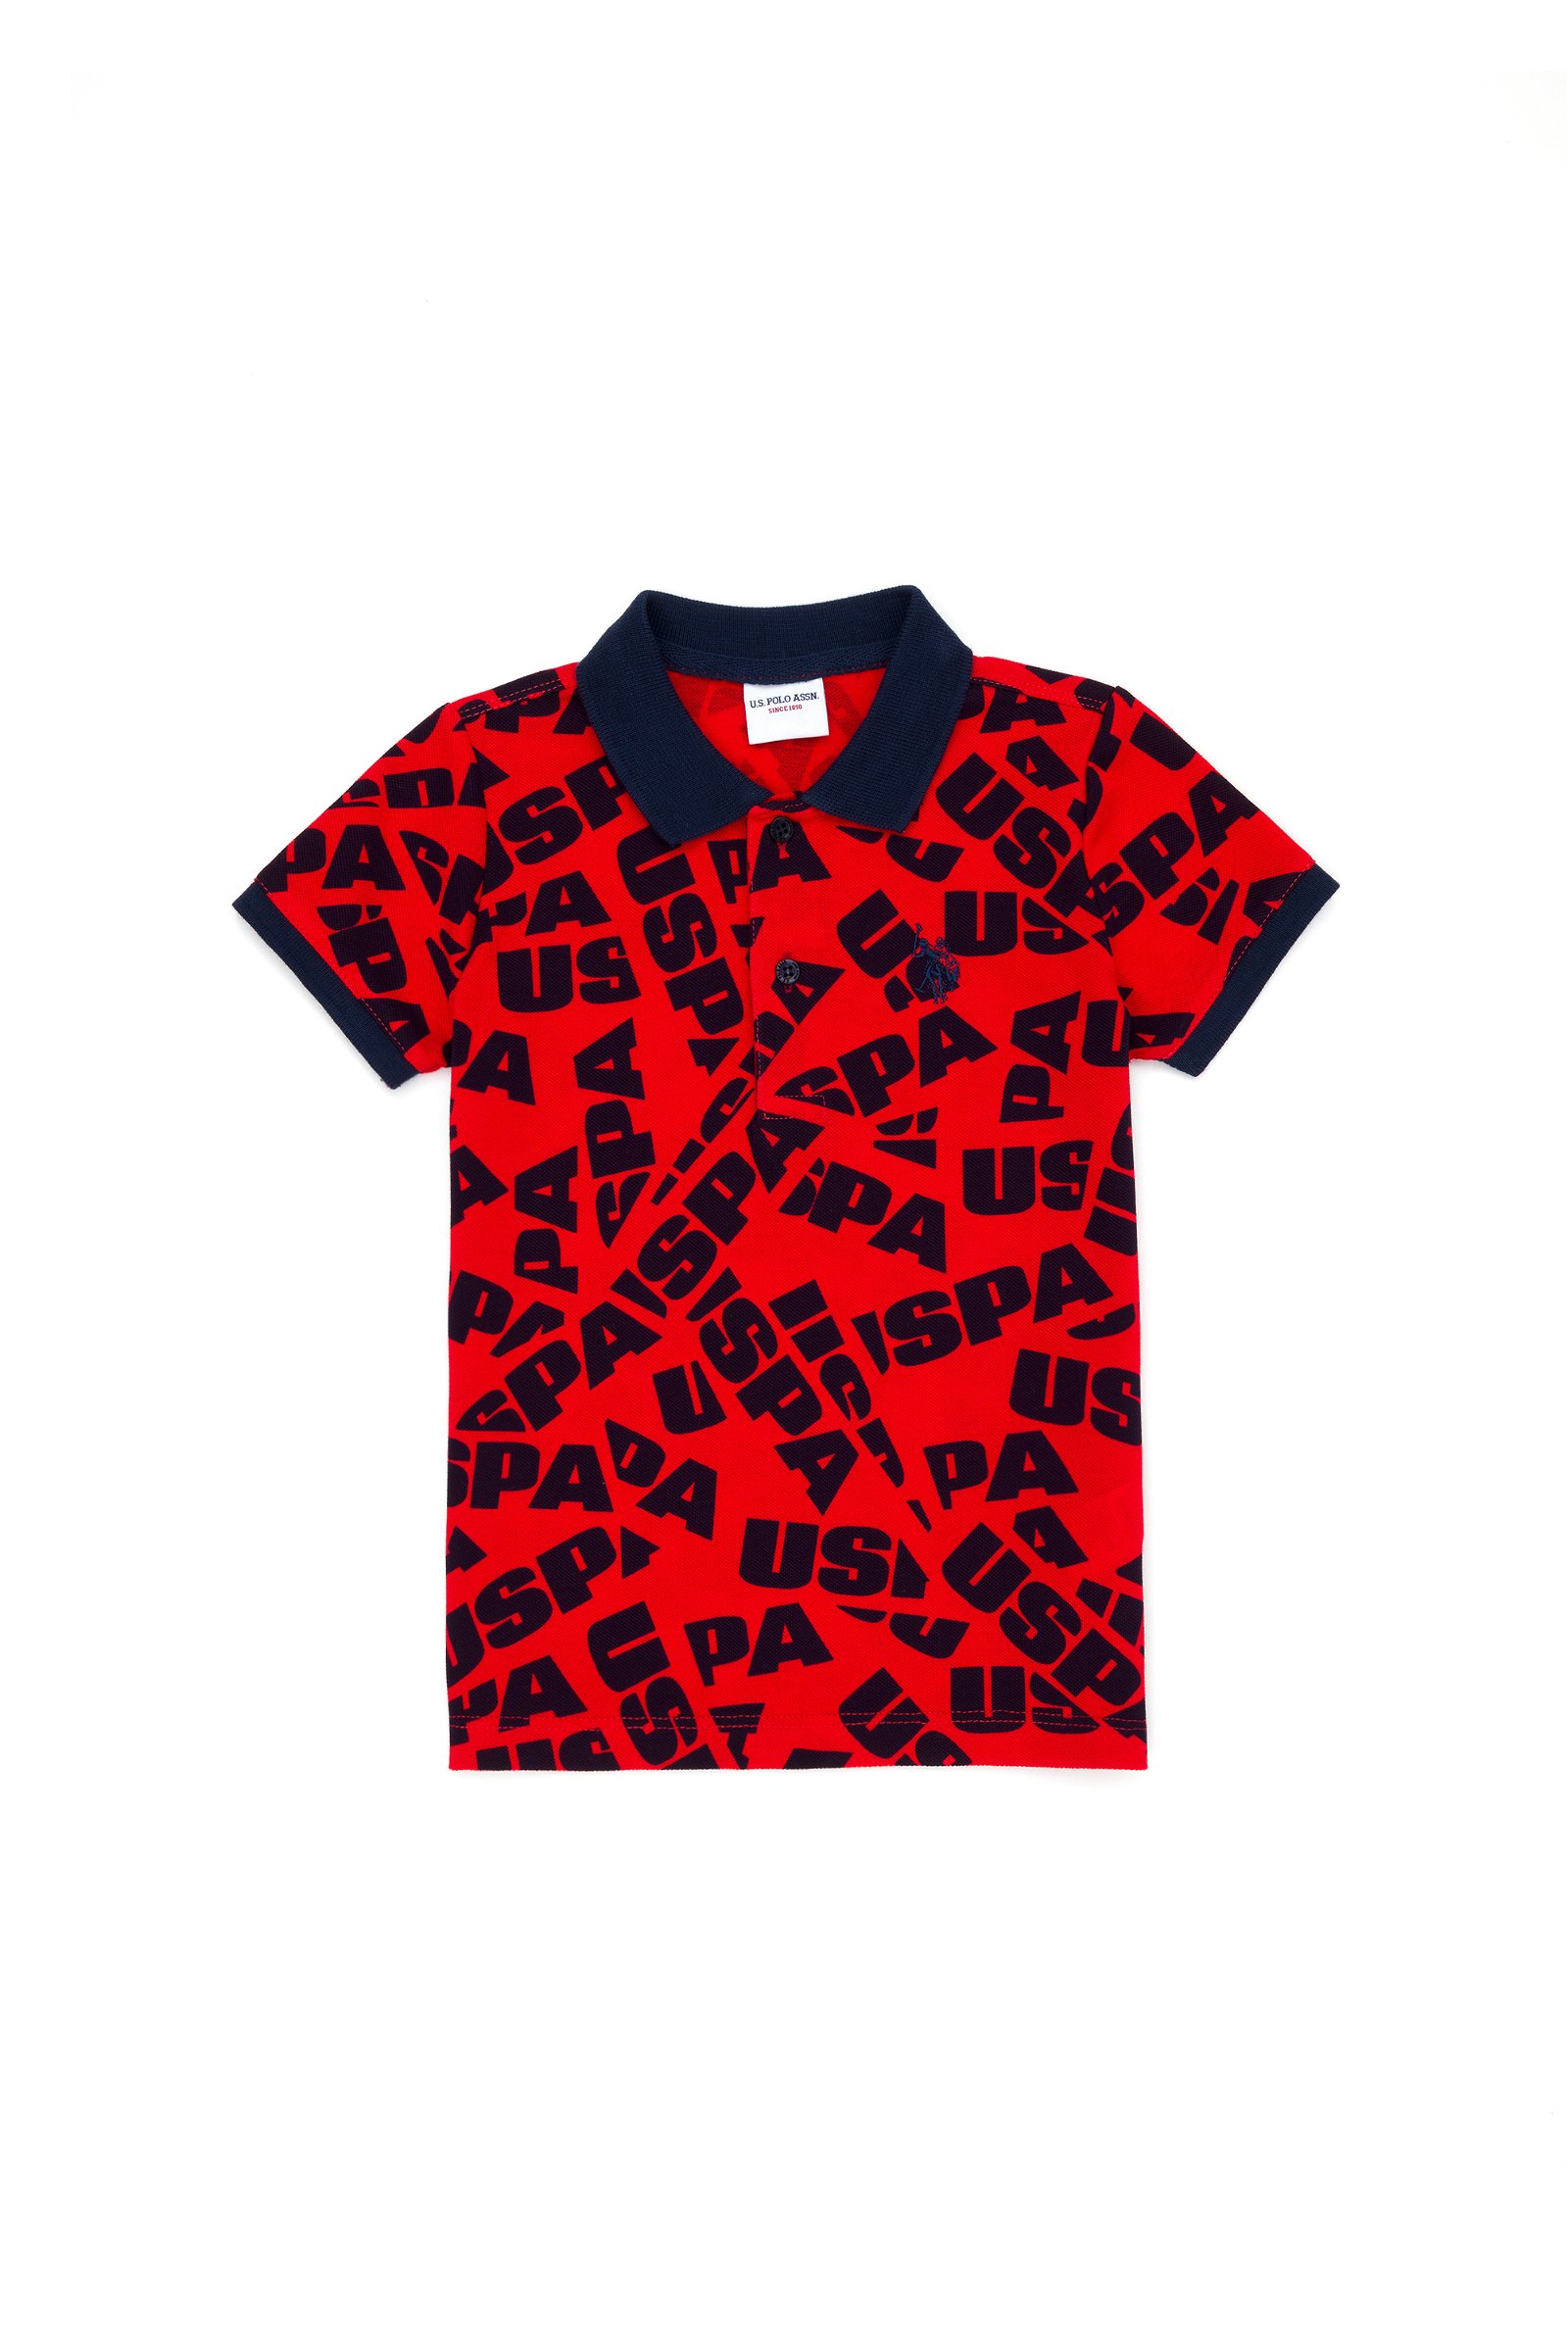 تی شرت  قرمز  استاندارد فیت  پسرانه یو اس پولو | US POLO ASSN